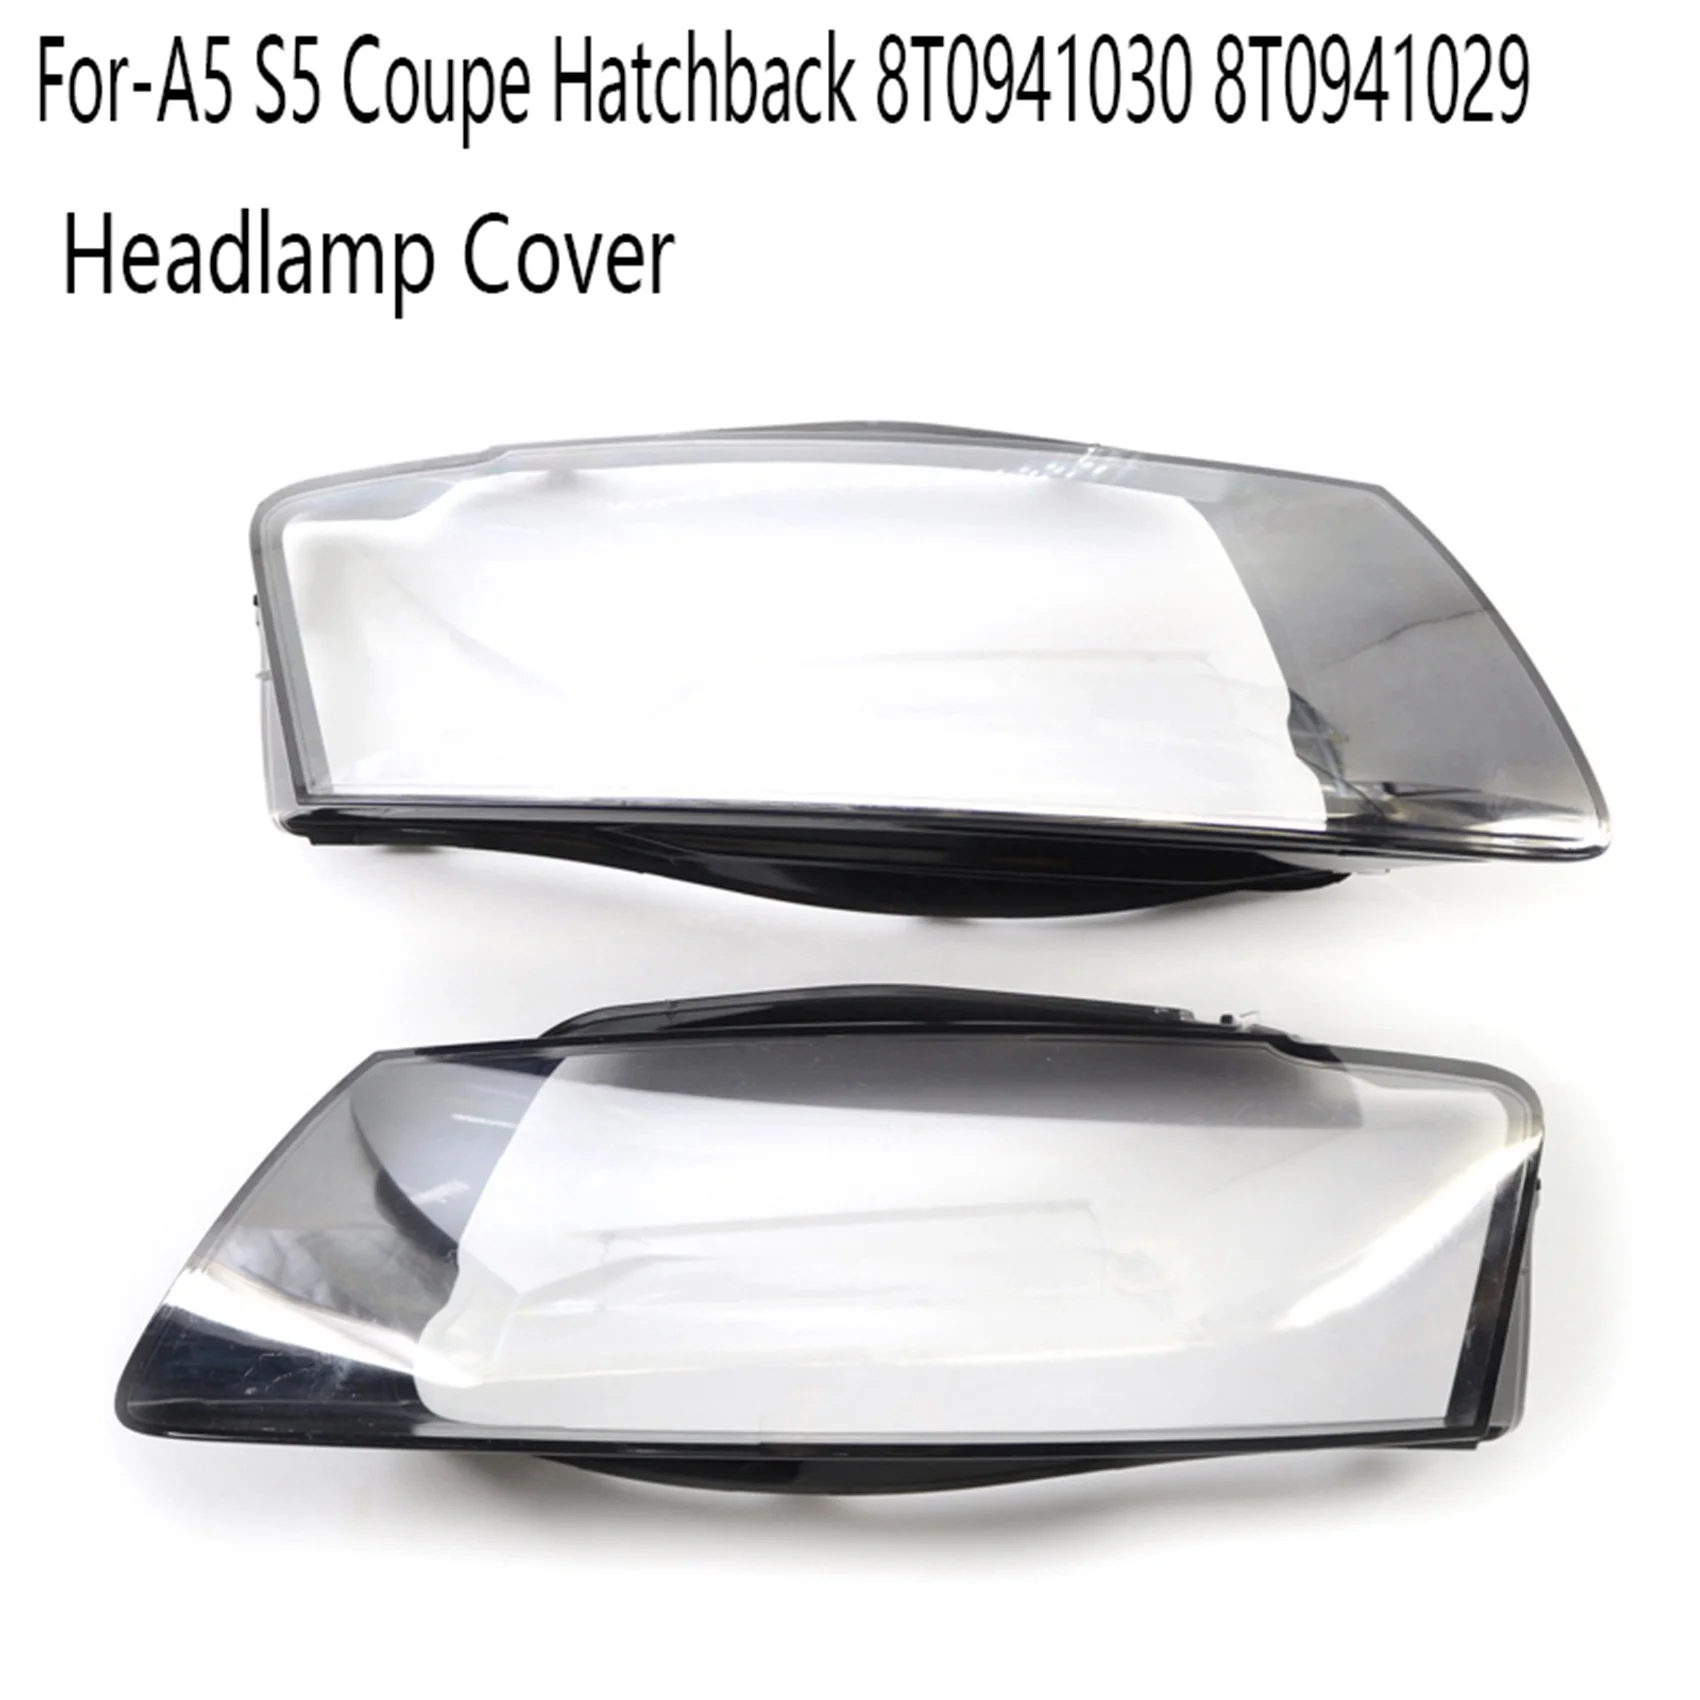 המכונית אור הראש לן מסגרת מעטפת ברור אהיל כיסוי מתאים-אאודי A5 S5 קופה Hatchback 8T0941030 8T0941029 התמונה 1